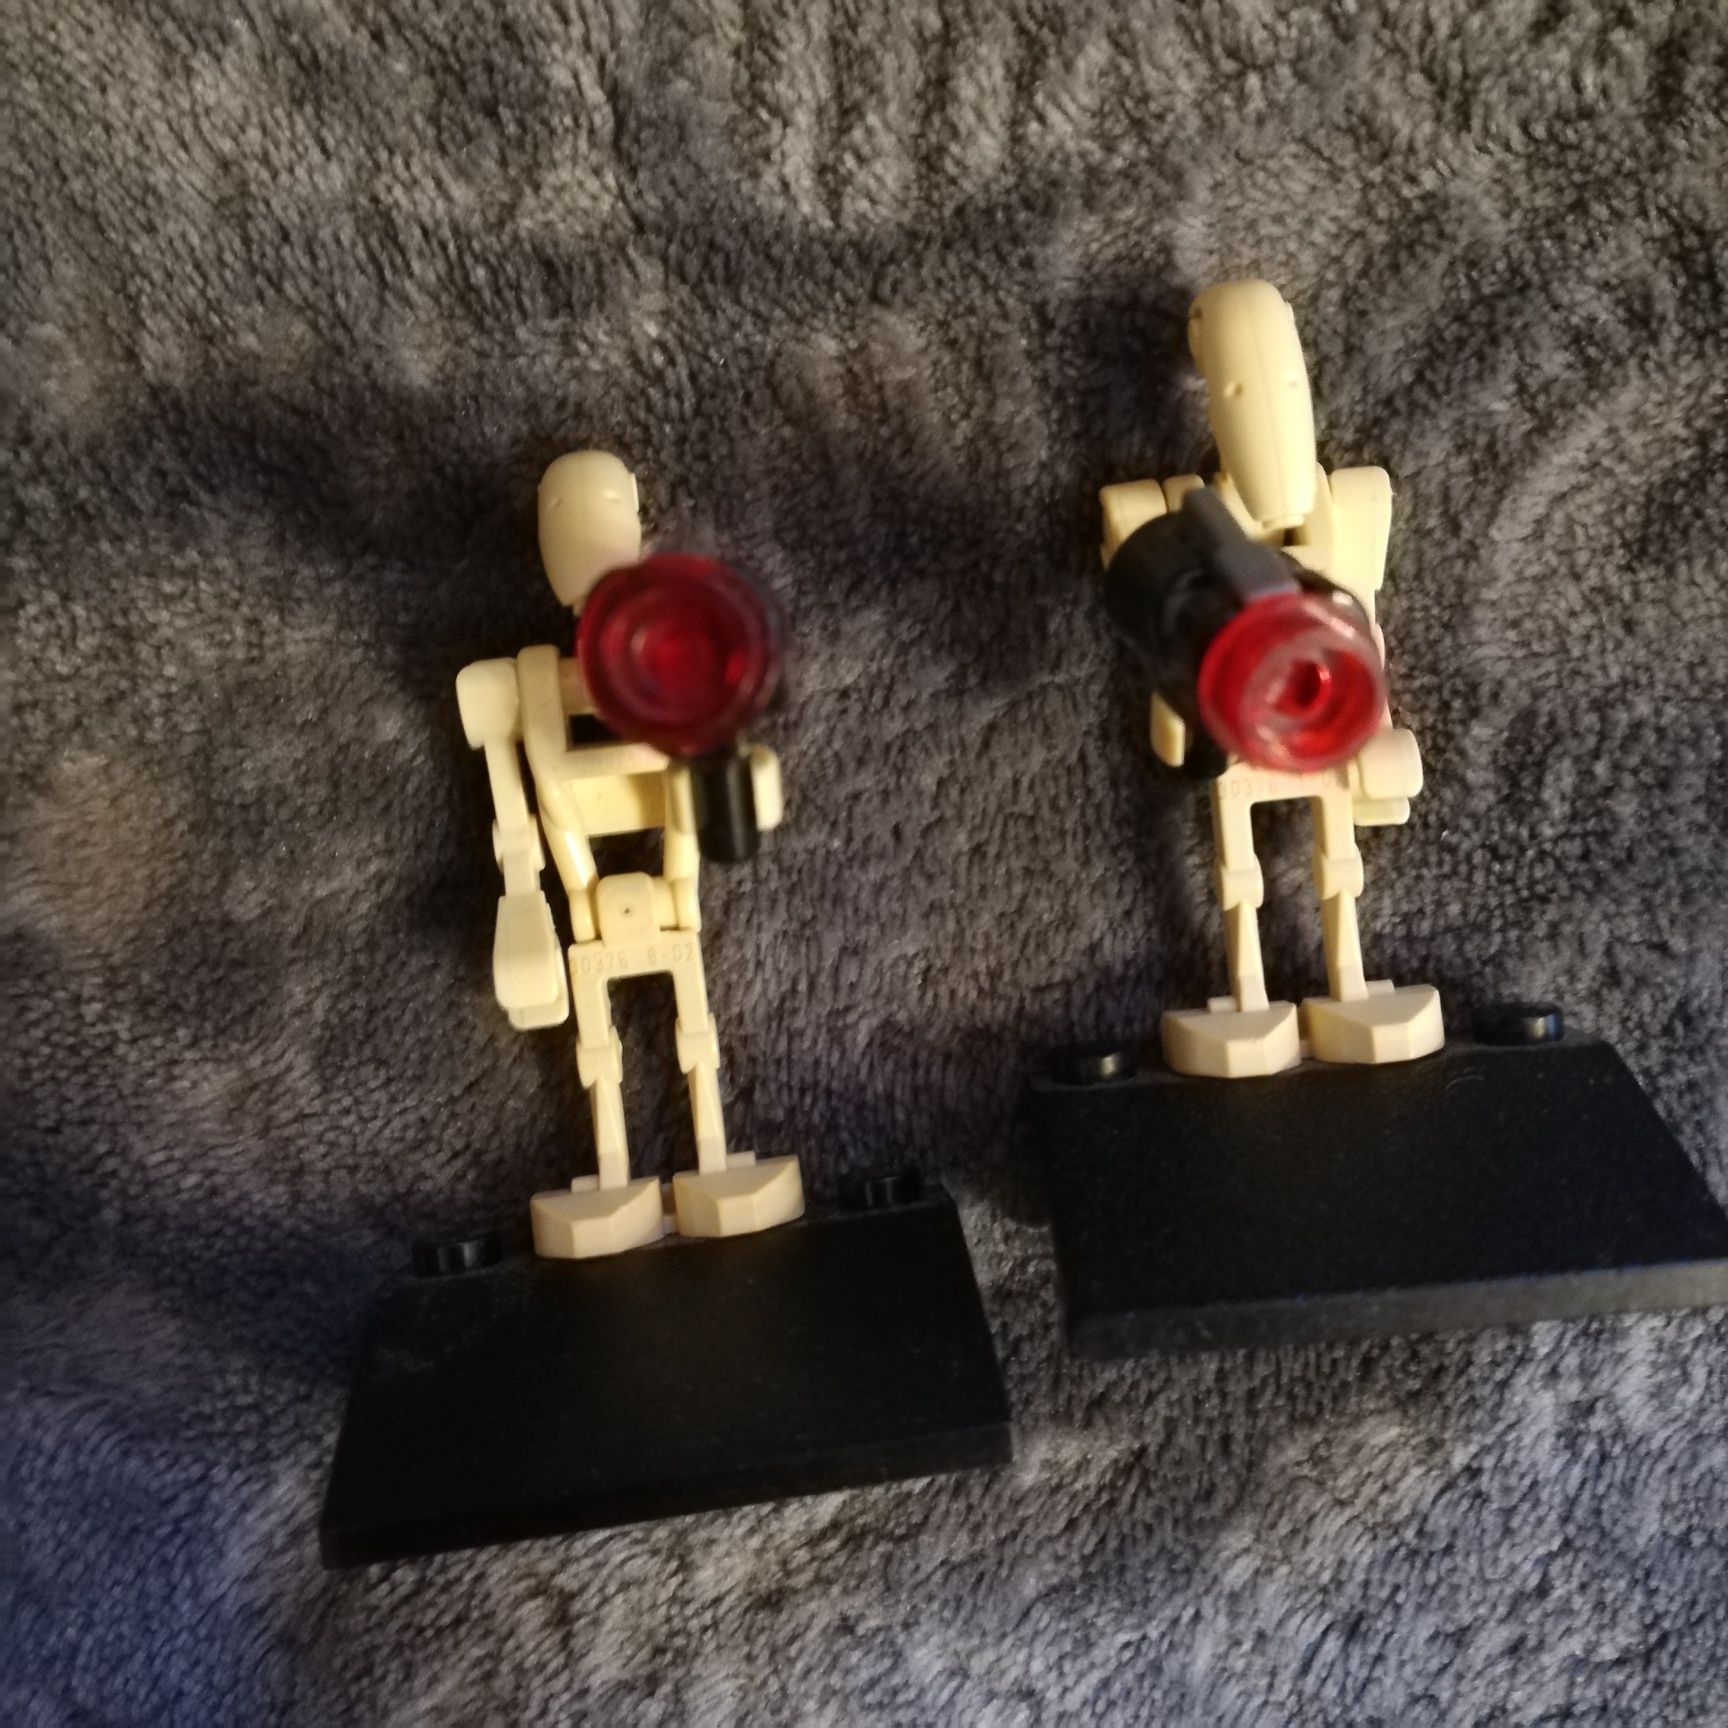 Uzbrojone droidy - lego star wars